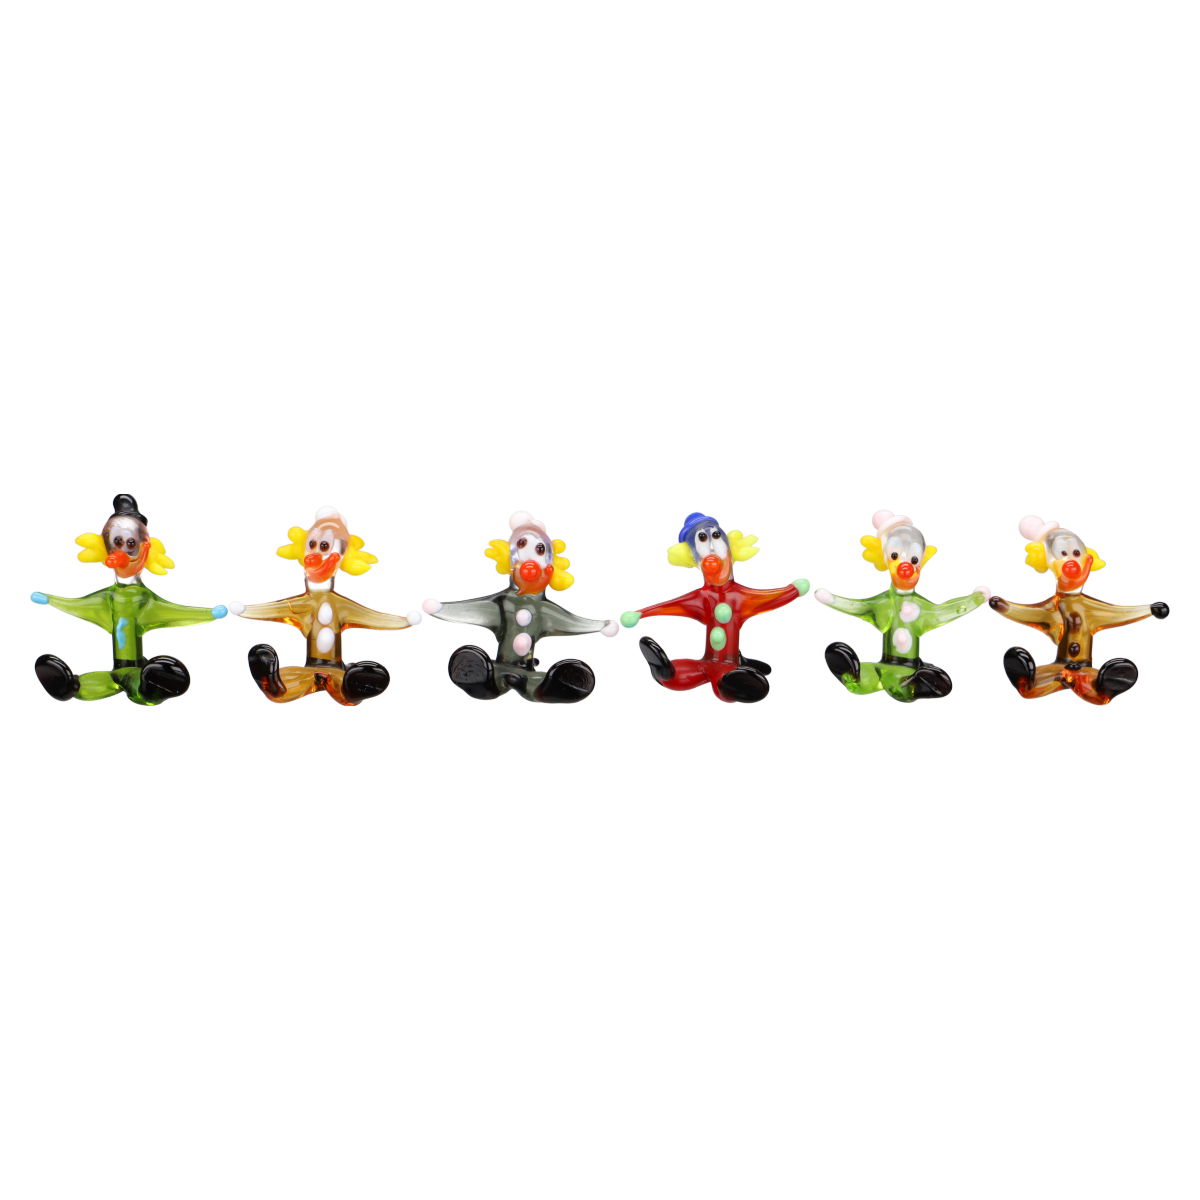 6 Miniaturfiguren Clowns